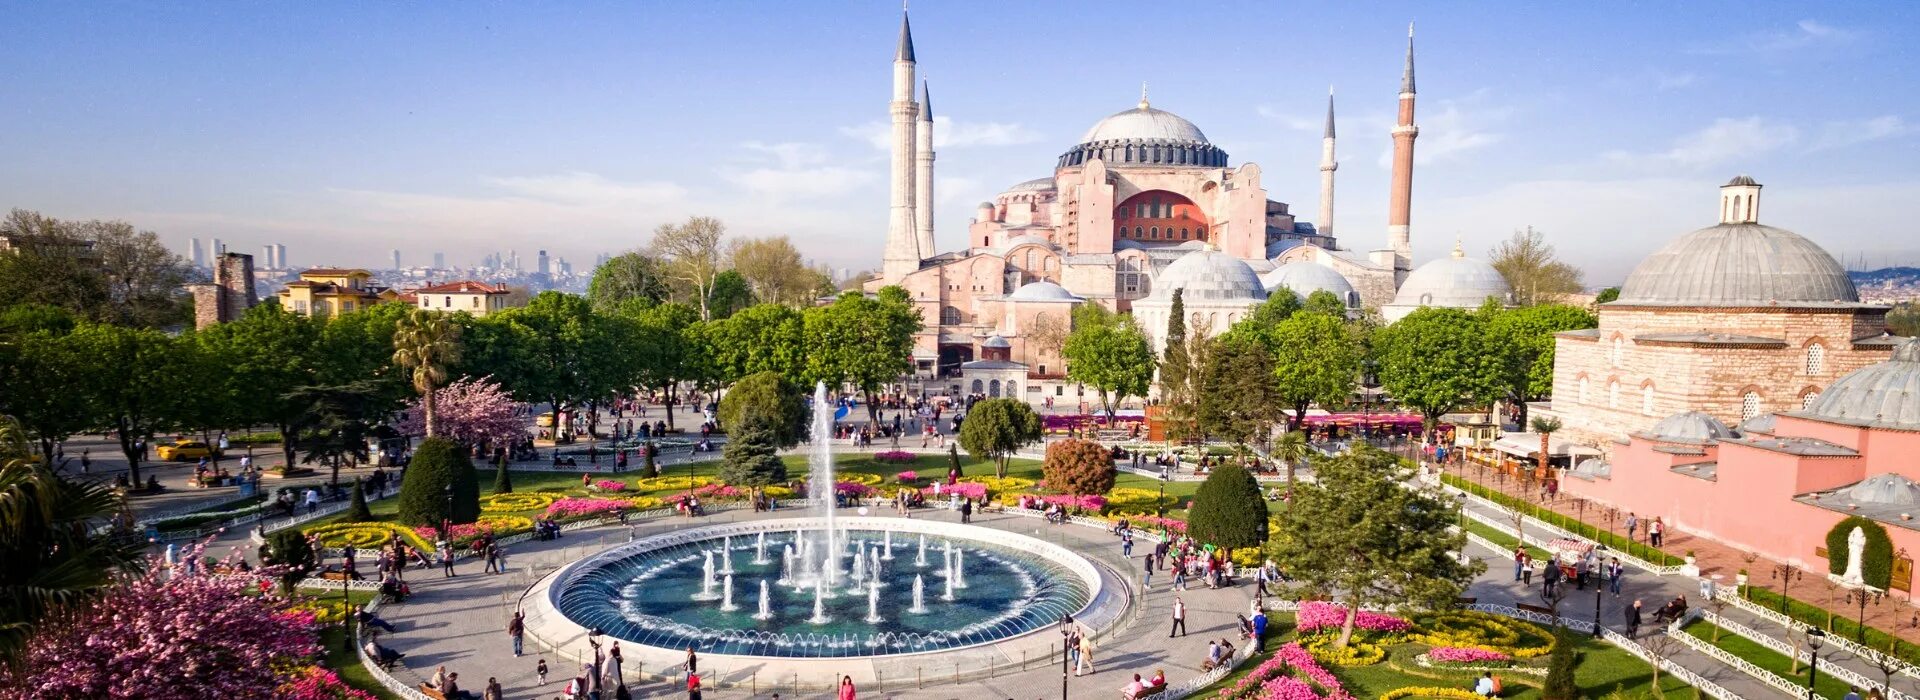 Турция столица Стамбул. Hagia Sophia Turkey. Стамбул Турция достопримечательности. Стамбул Султанахмет храм Святой. Тур в стамбул из минеральных вод